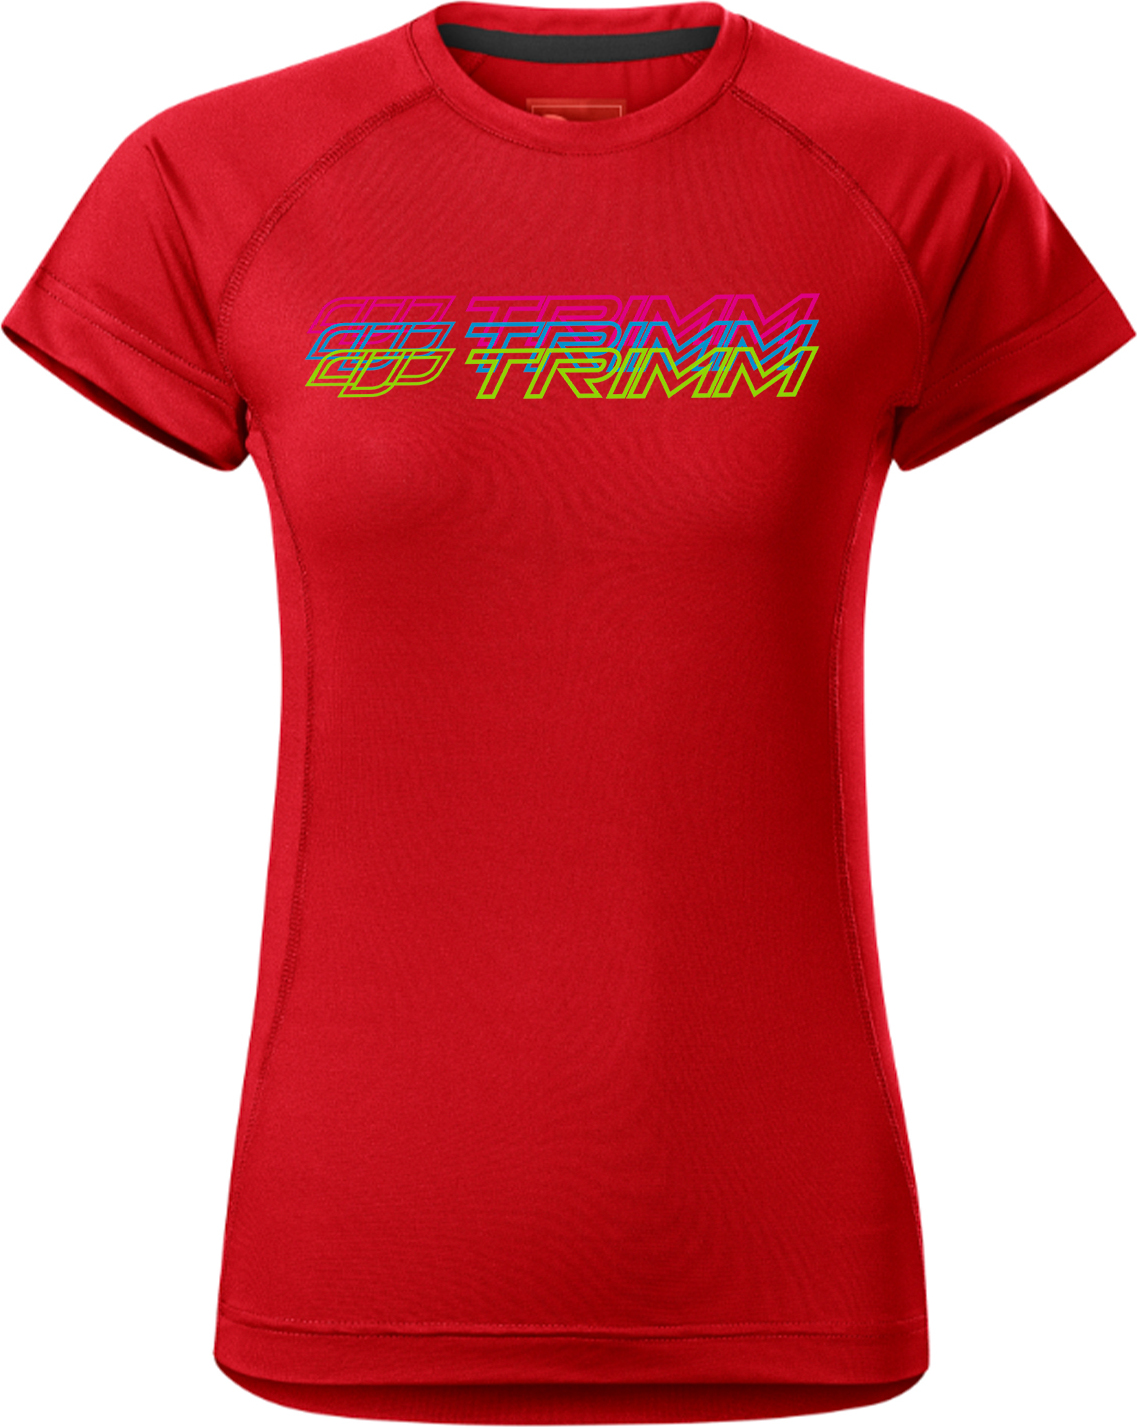 Dámské tričko TRIMM Destiny Lady červené Velikost: S, Barva: red